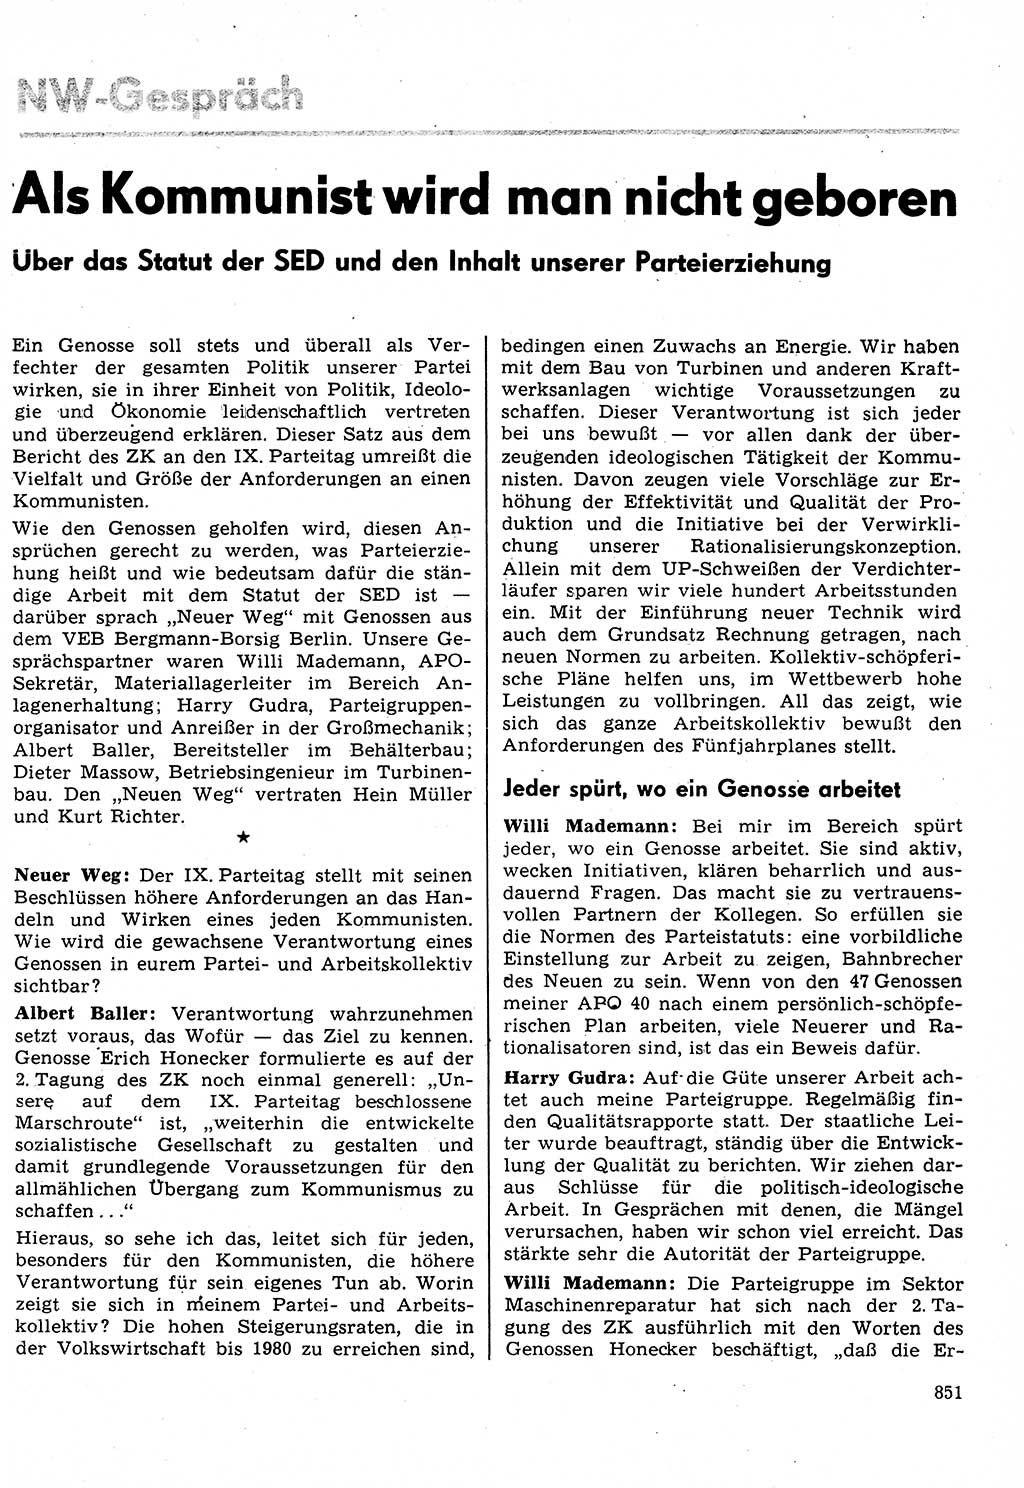 Neuer Weg (NW), Organ des Zentralkomitees (ZK) der SED (Sozialistische Einheitspartei Deutschlands) für Fragen des Parteilebens, 31. Jahrgang [Deutsche Demokratische Republik (DDR)] 1976, Seite 851 (NW ZK SED DDR 1976, S. 851)